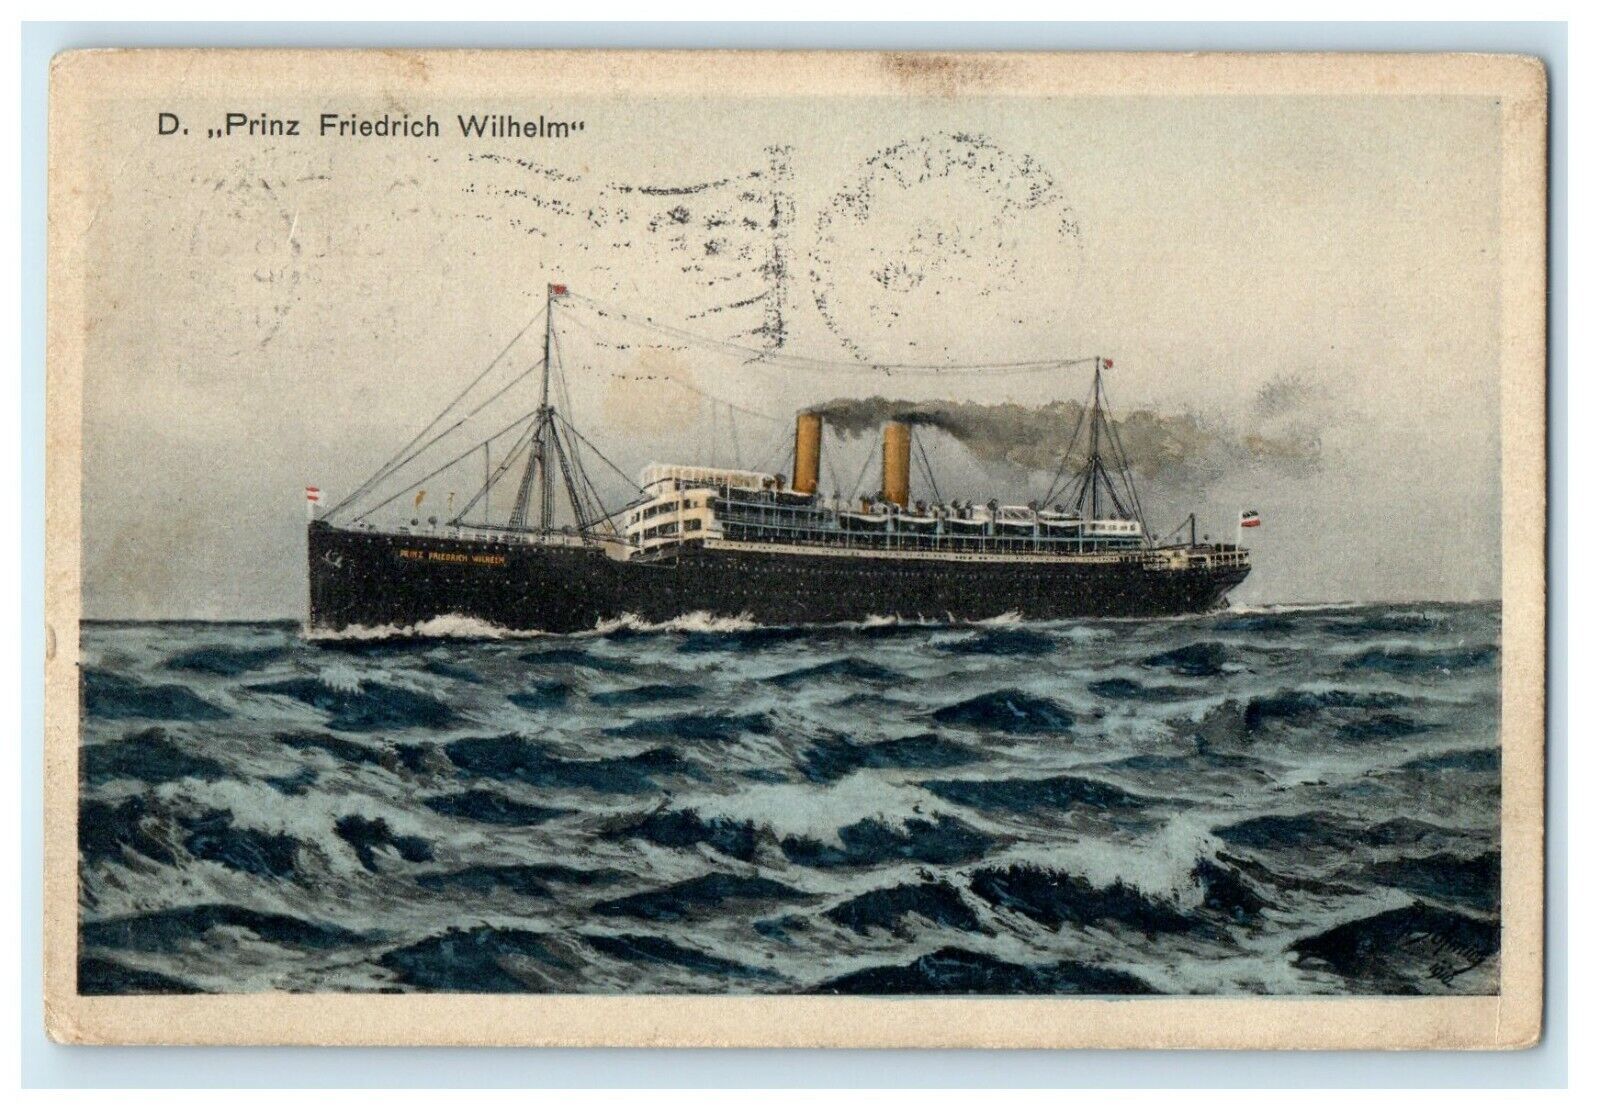 1911 Norddeutscher Lloyd Bremen, D Prinz Friedrich Wilhelm Postcard